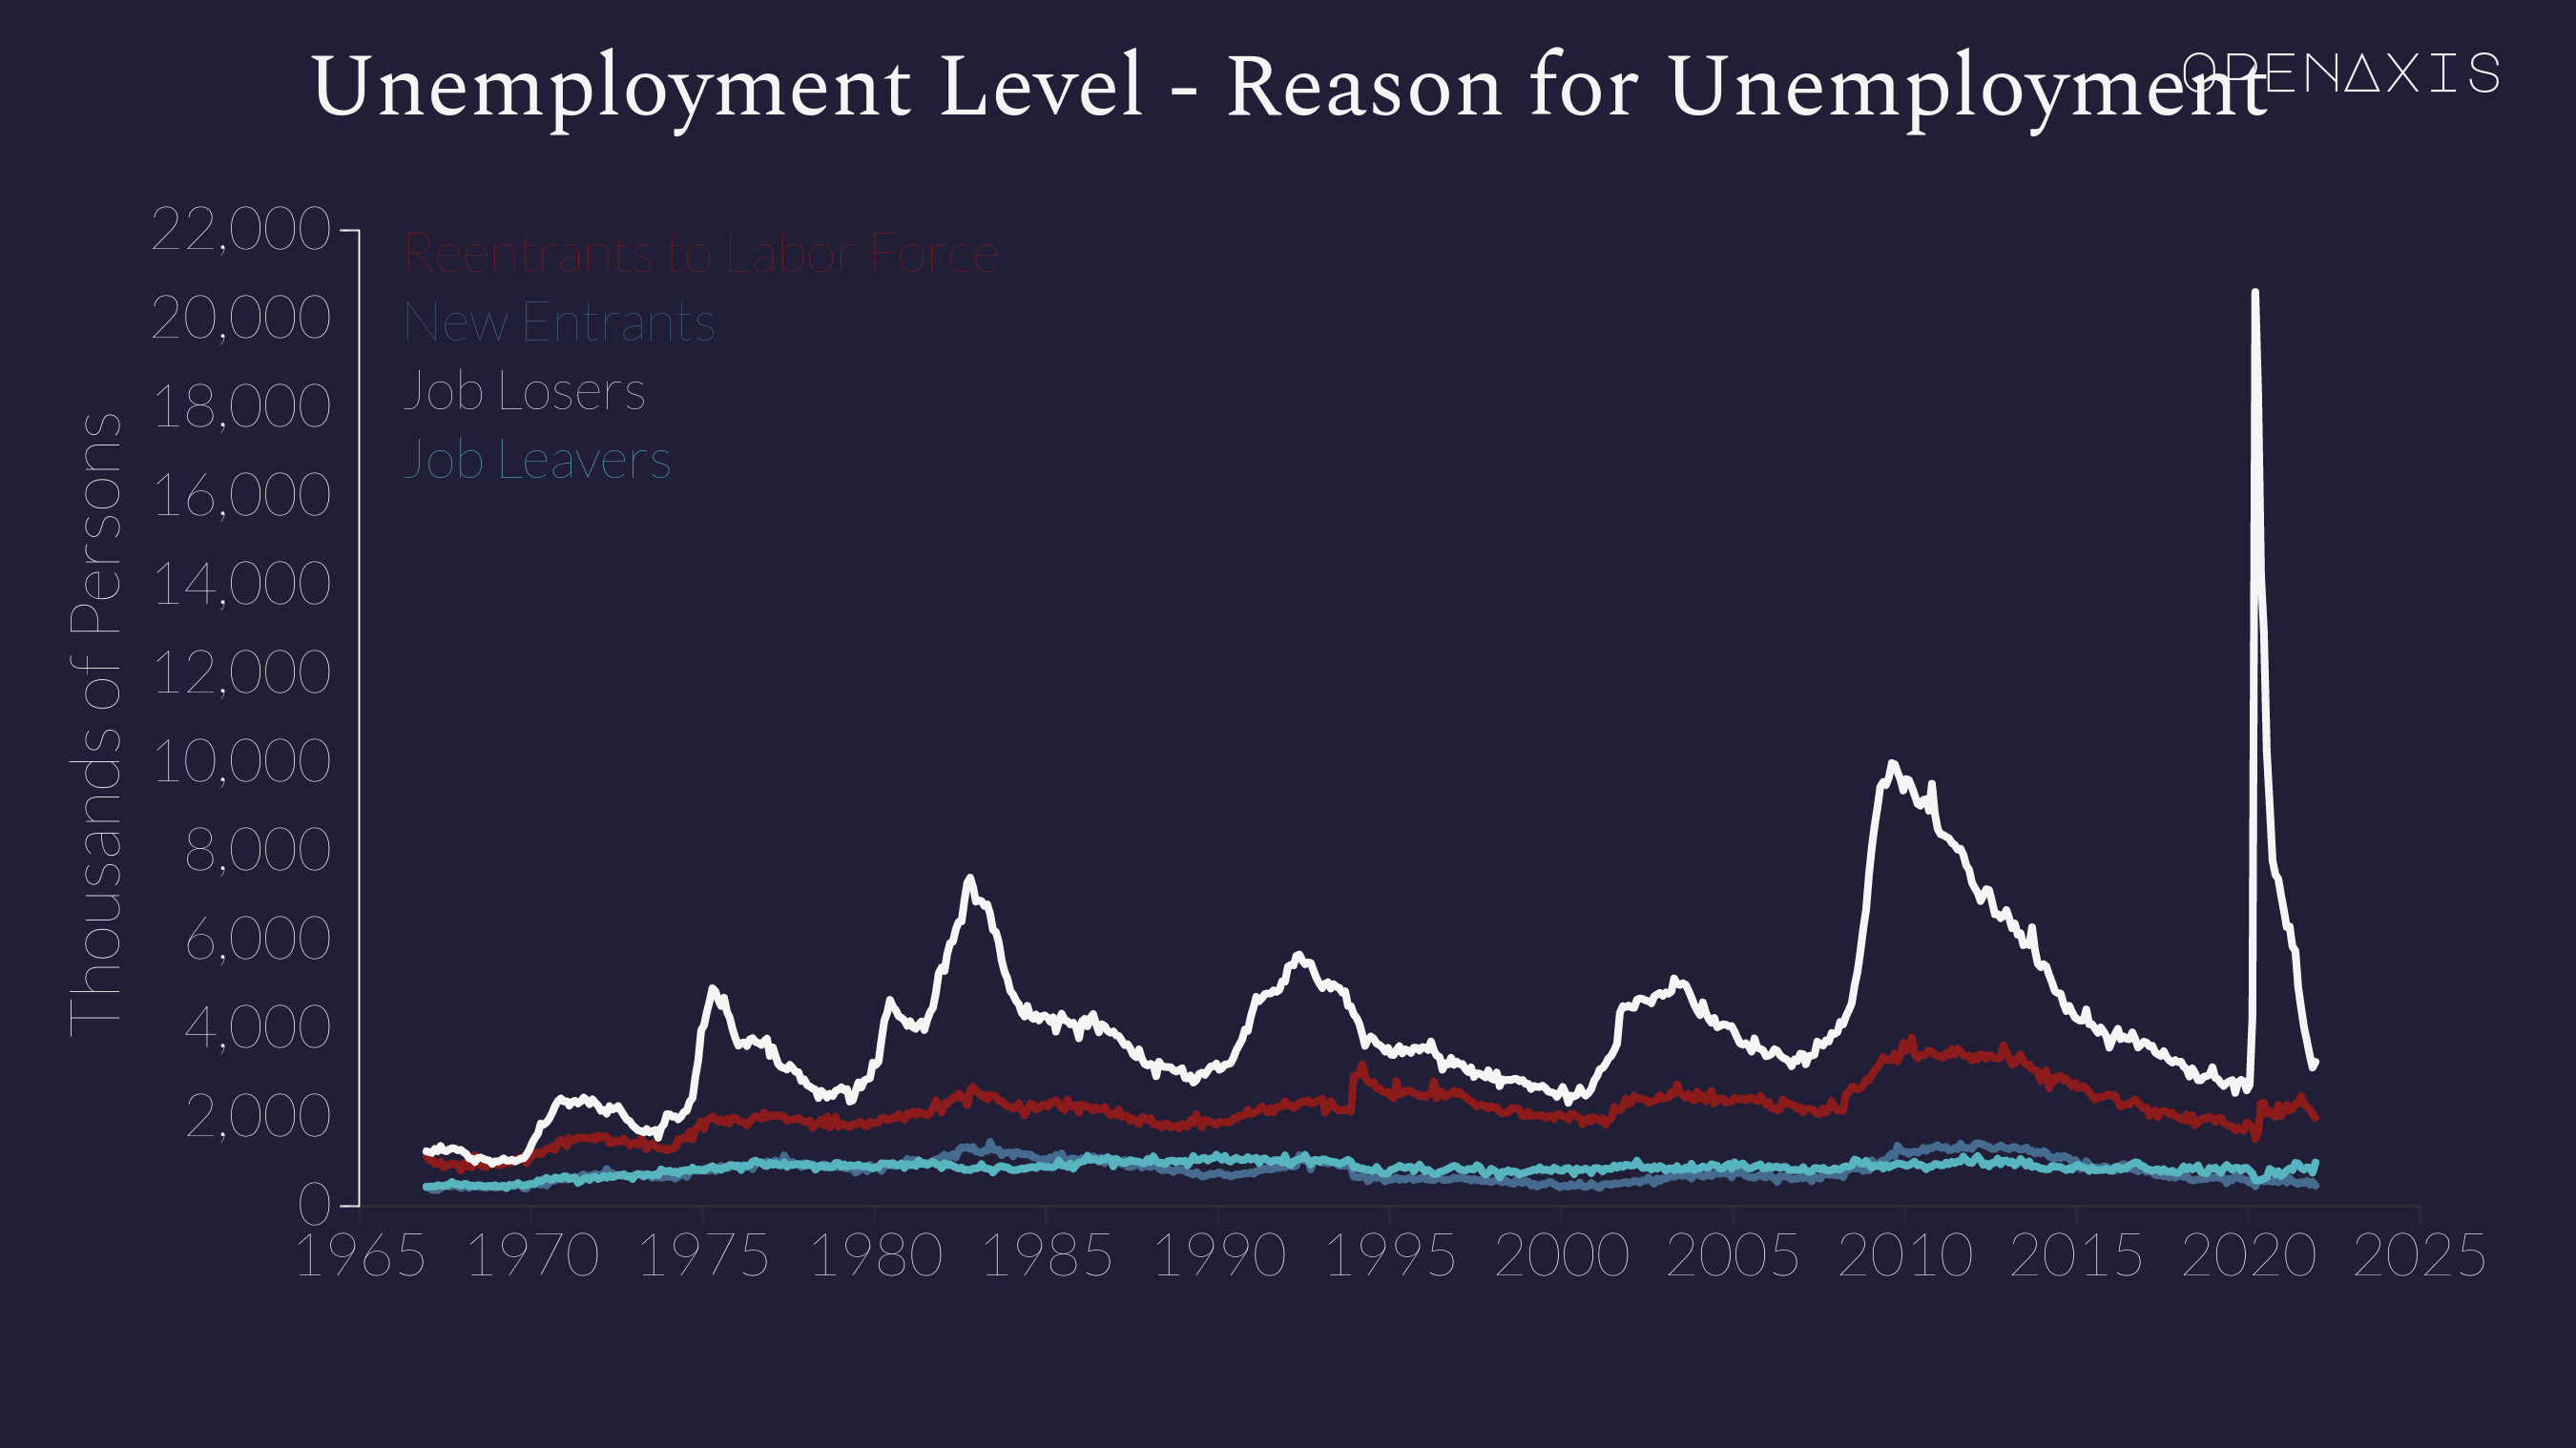 "Unemployment Level - Reason for Unemployment"